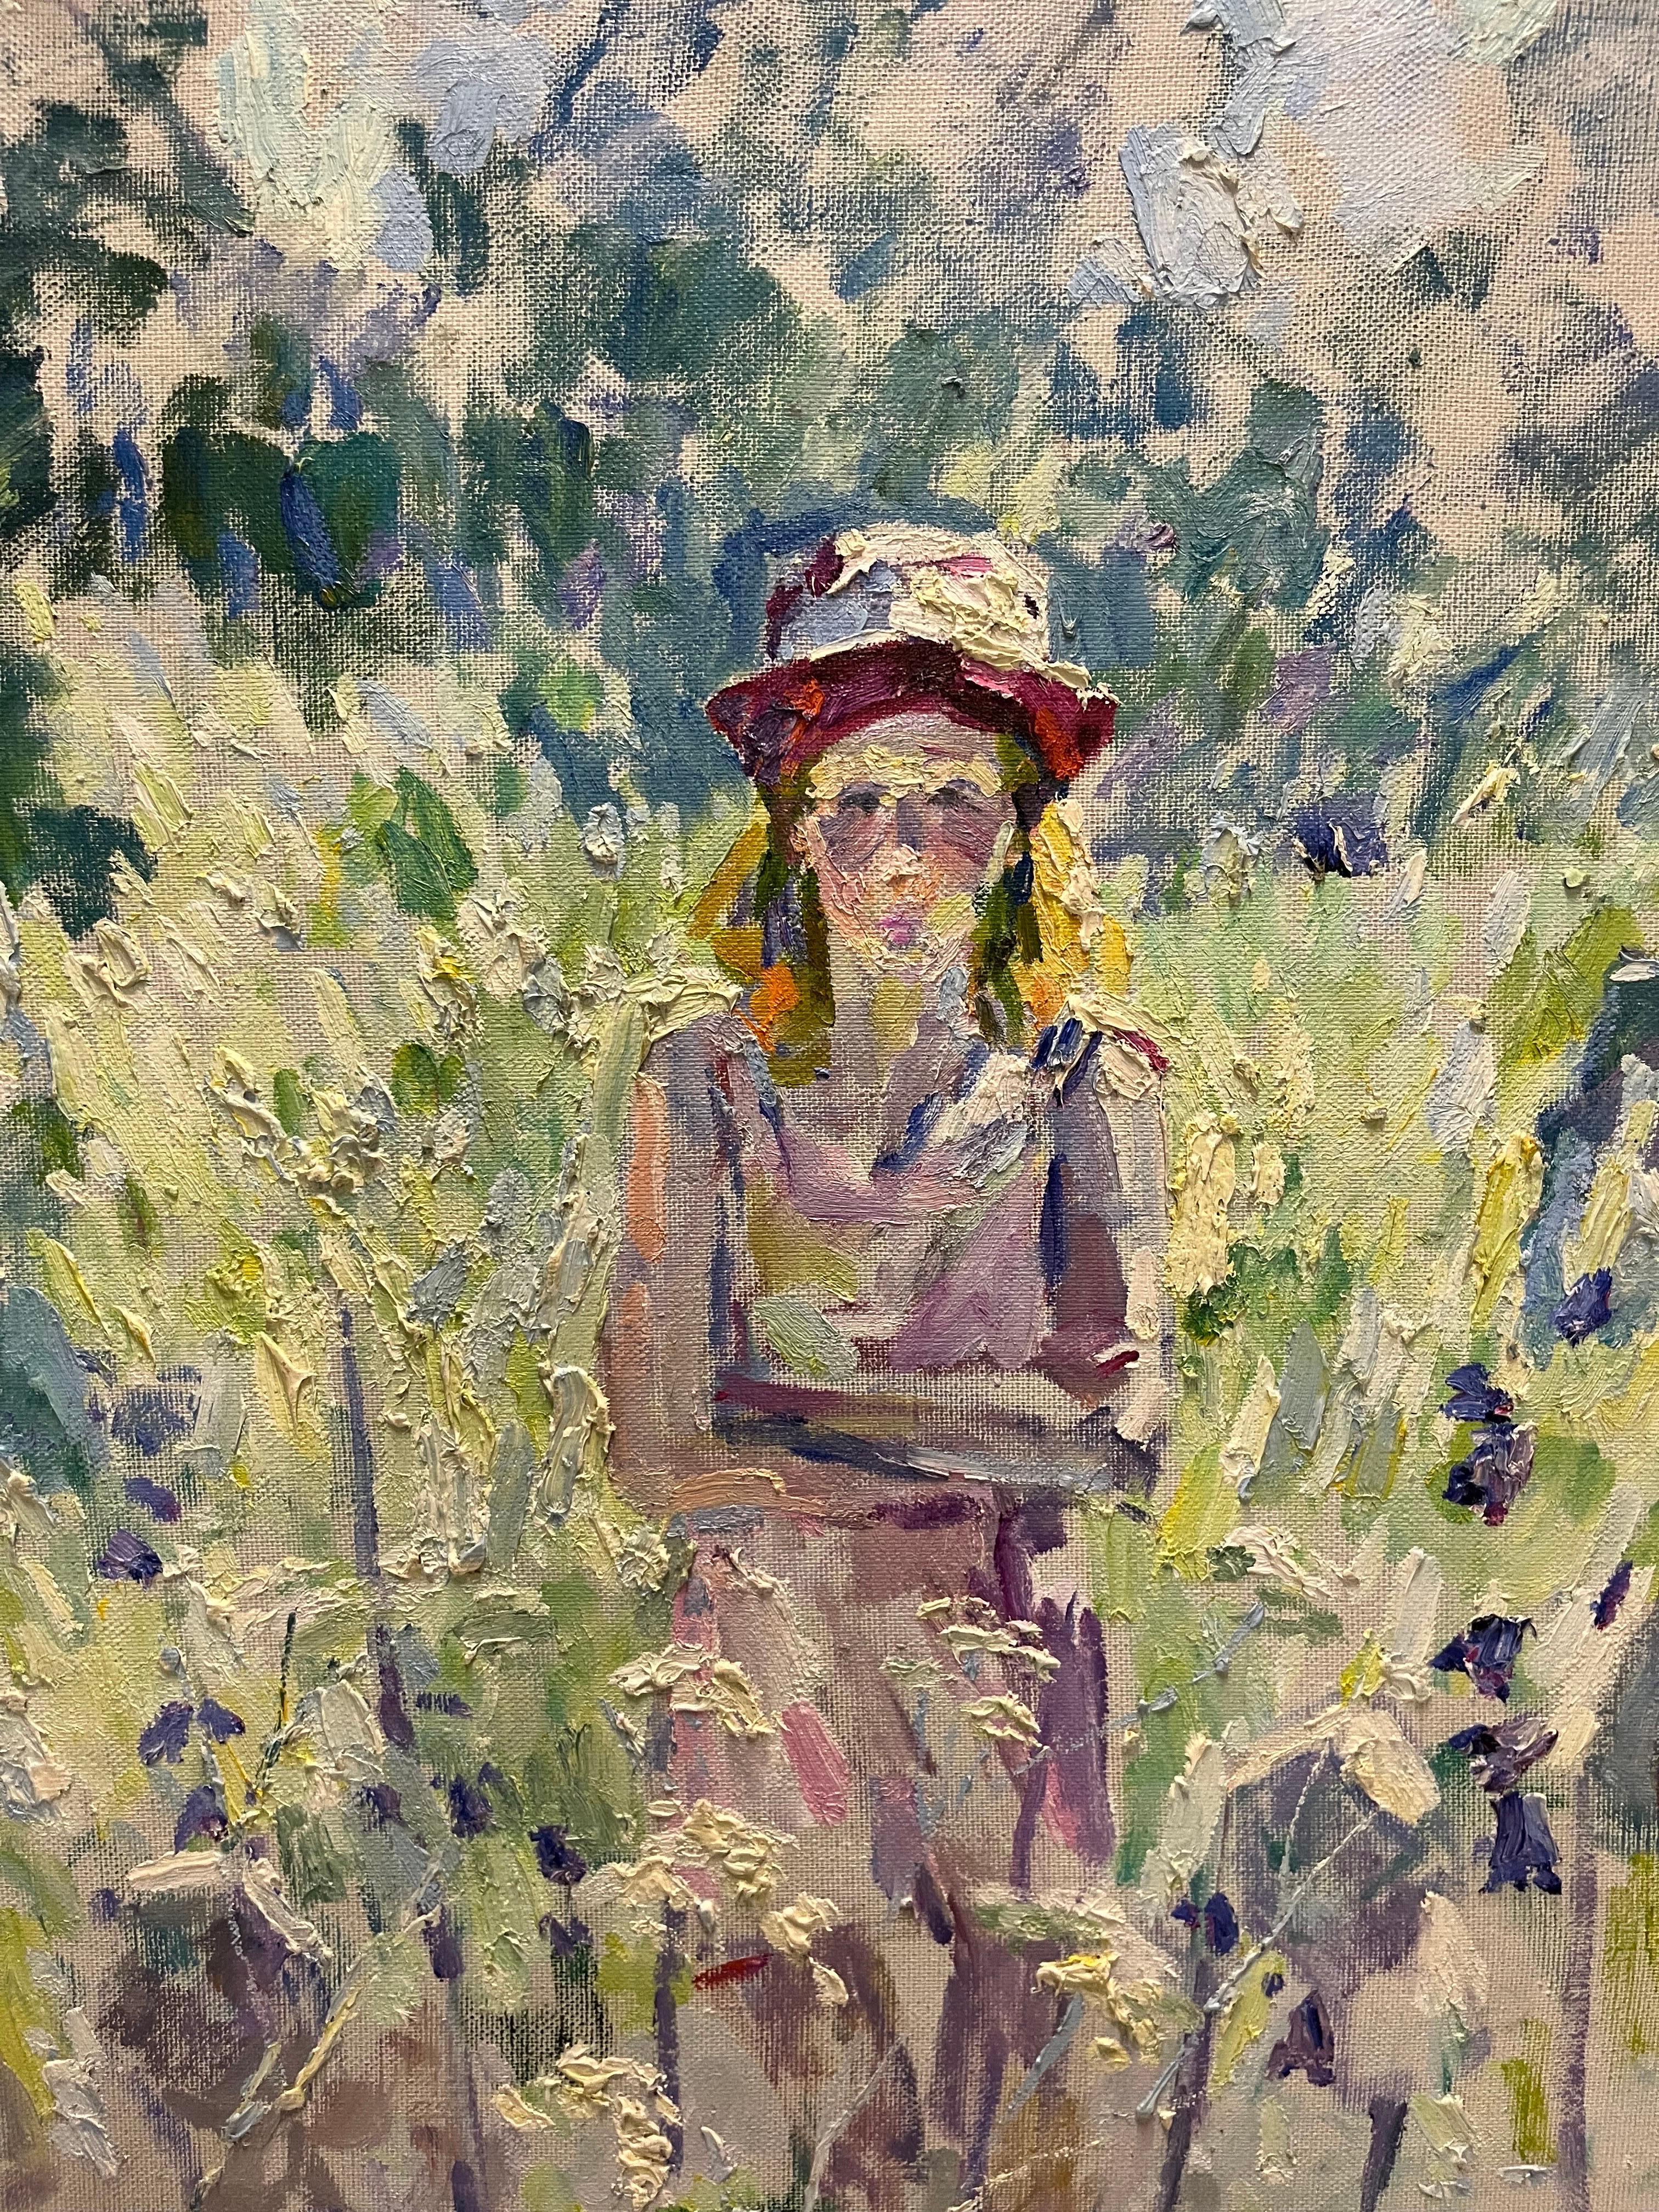 Jeune fille avec une cape rose  100 cm x 93 cm  2001 - Painting de Georgij Moroz